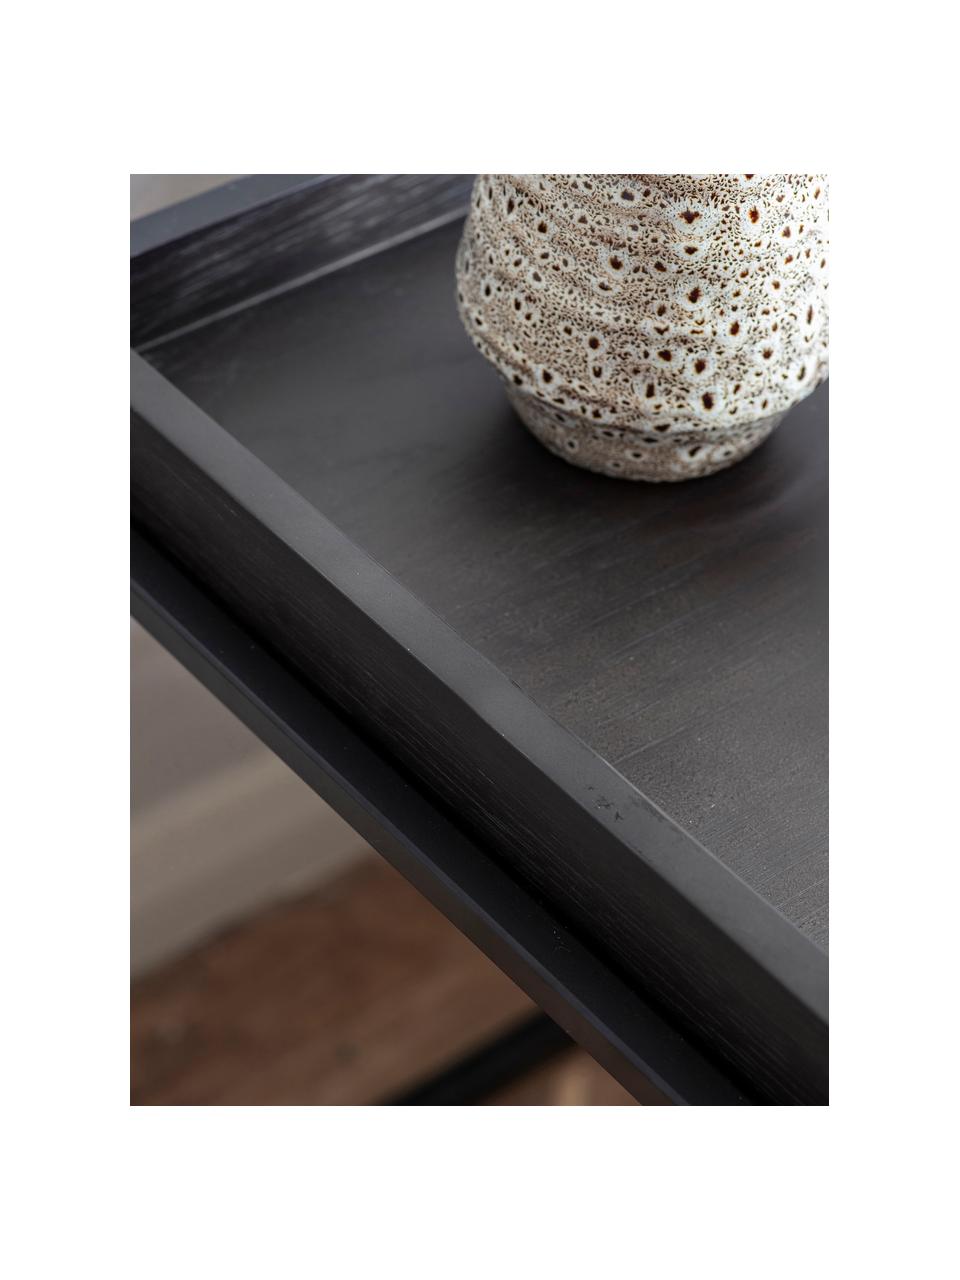 Mesa auxiliar de madera y metal Forden, Tablero: tablero de fibras de dens, Estructura: metal pintado, Negro, An 55 x Al 60 cm